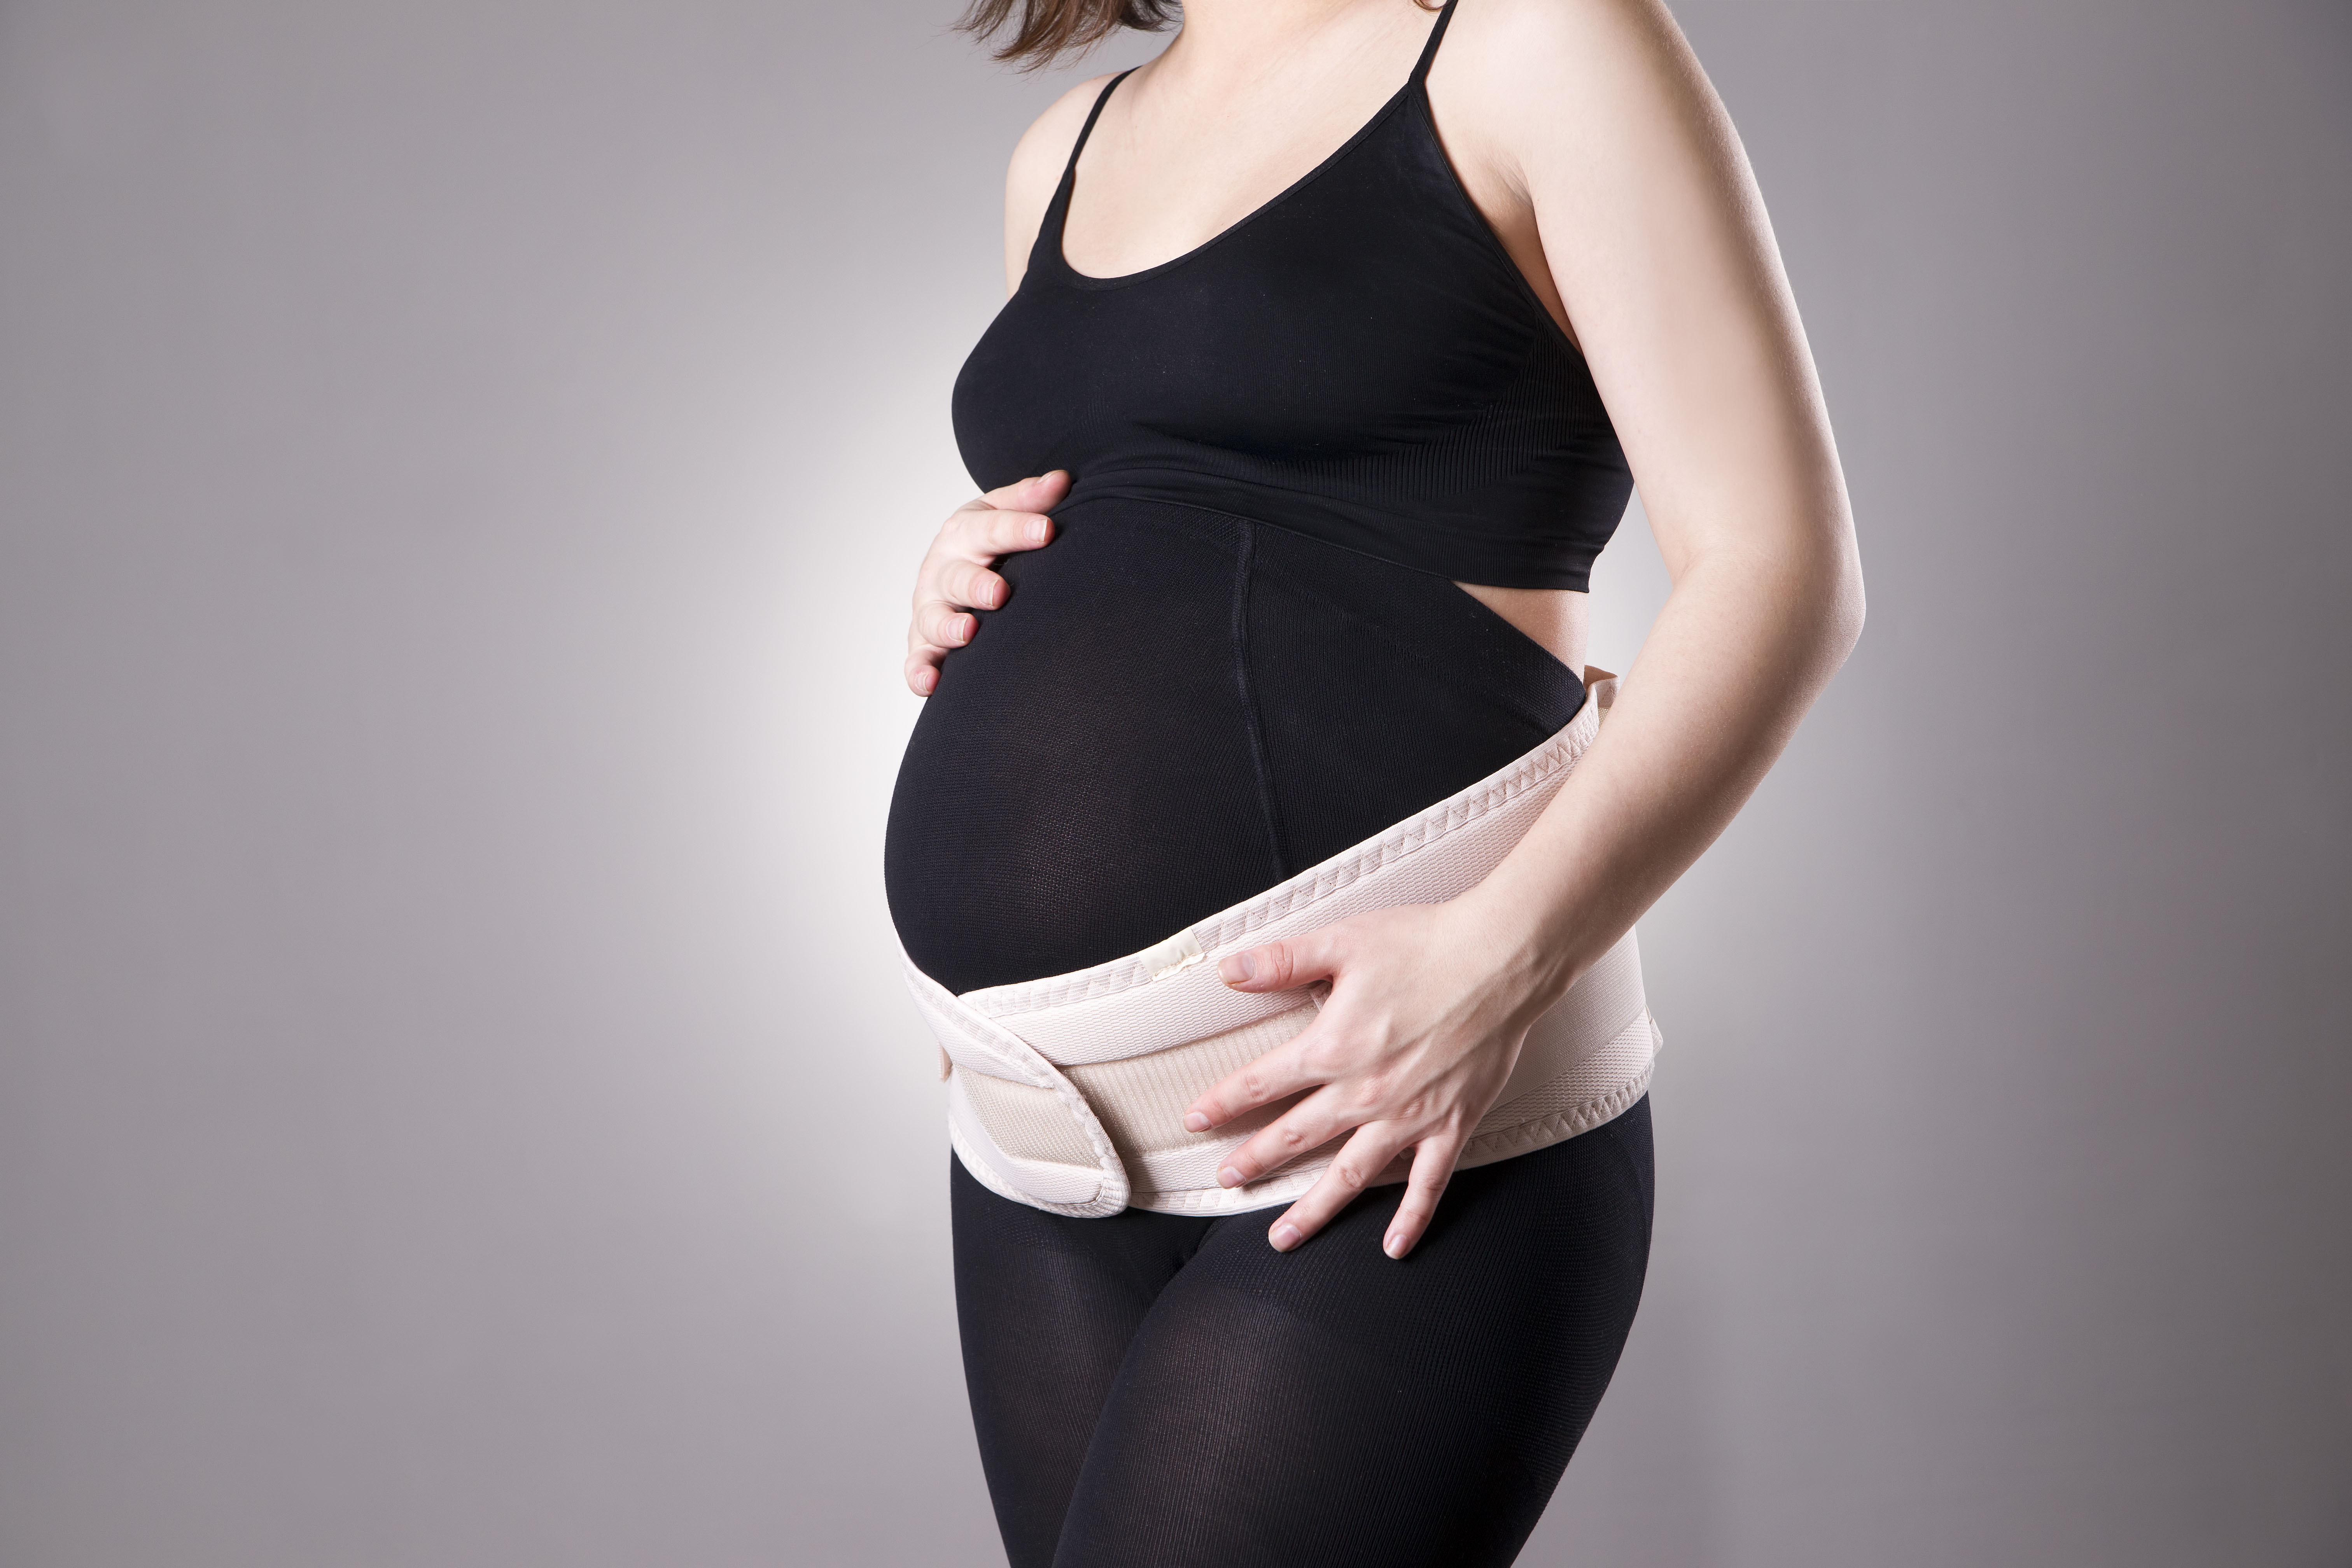  Maternity Belt Support for Back, Pelvic, Hip, Abdomen